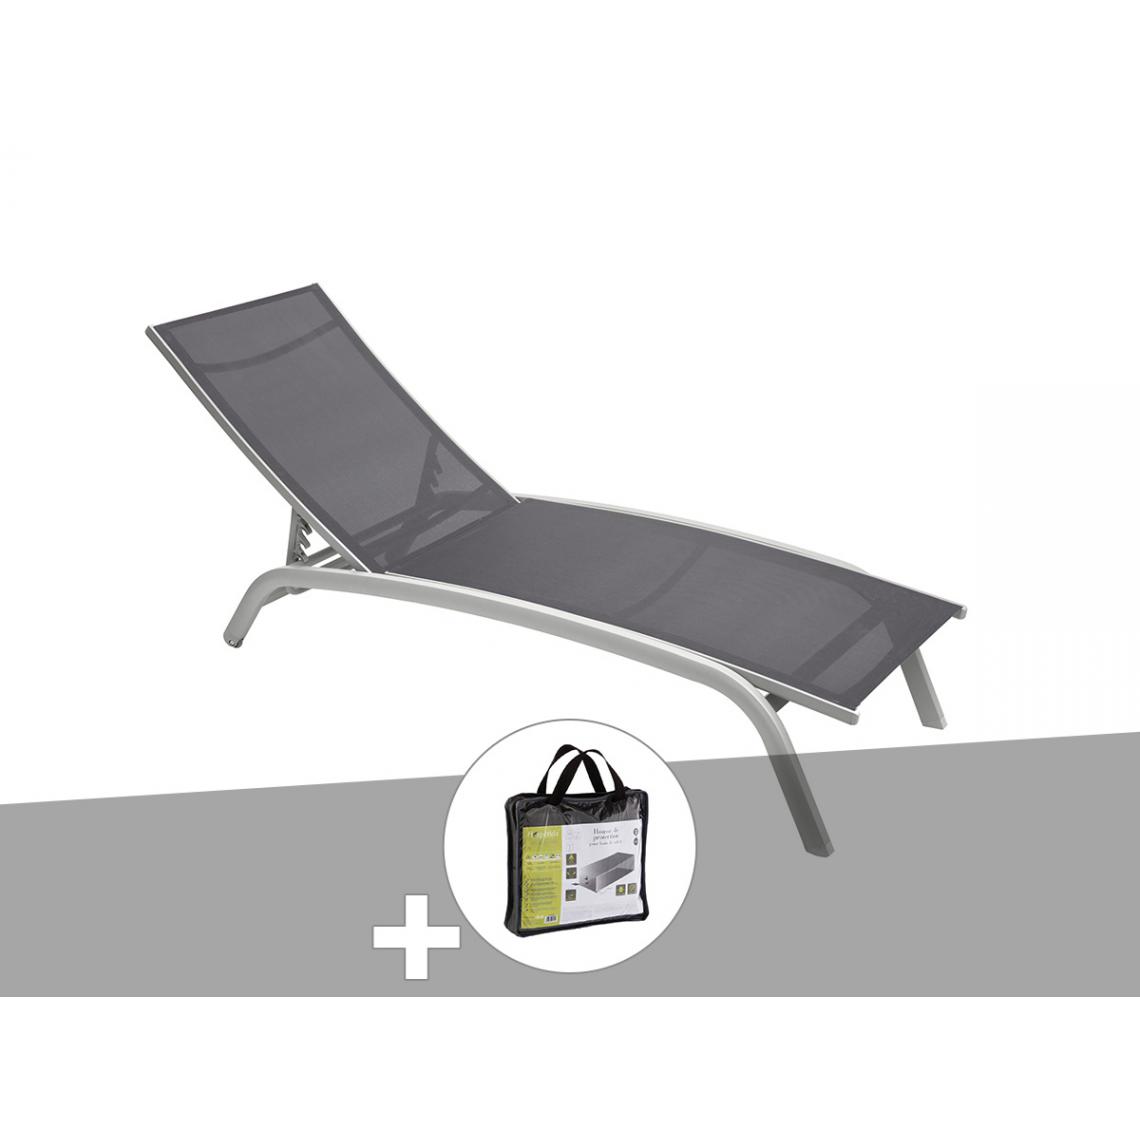 Hesperide - Transat en texaline Bonao Ardoise/Silver avec housse de protection - Hespéride - Transats, chaises longues